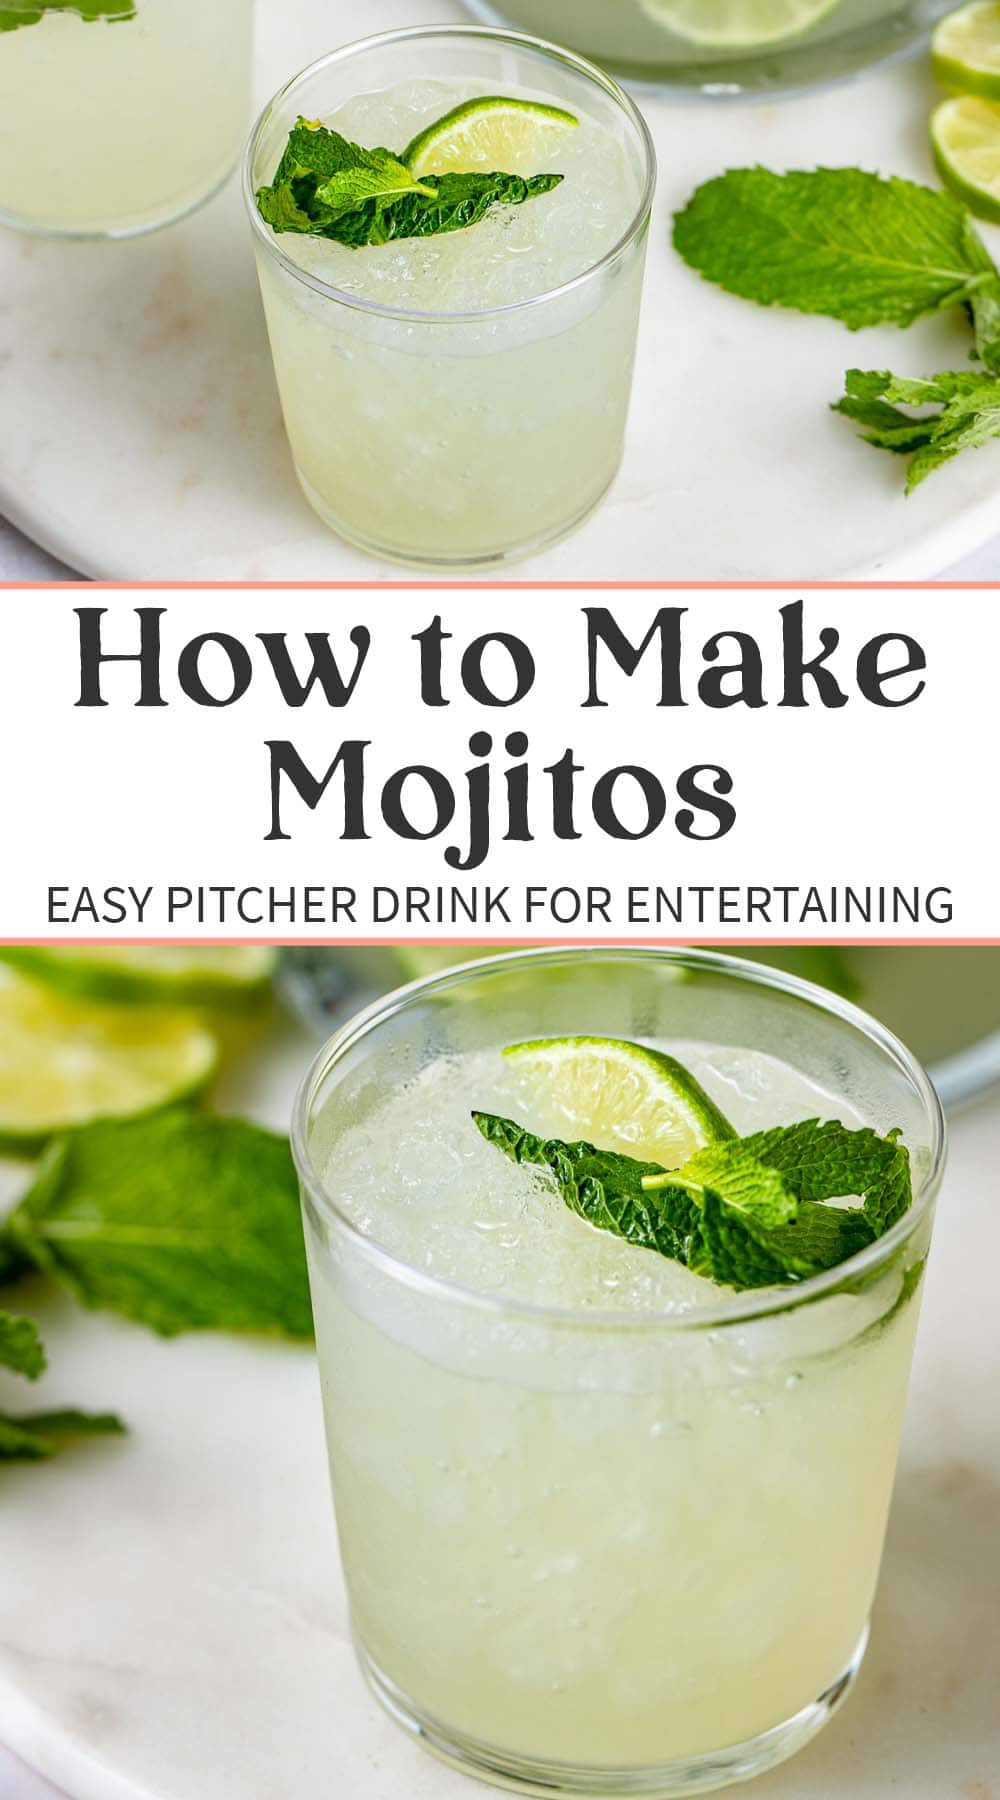 Pin graphic for easy mojito pitcher recipe.